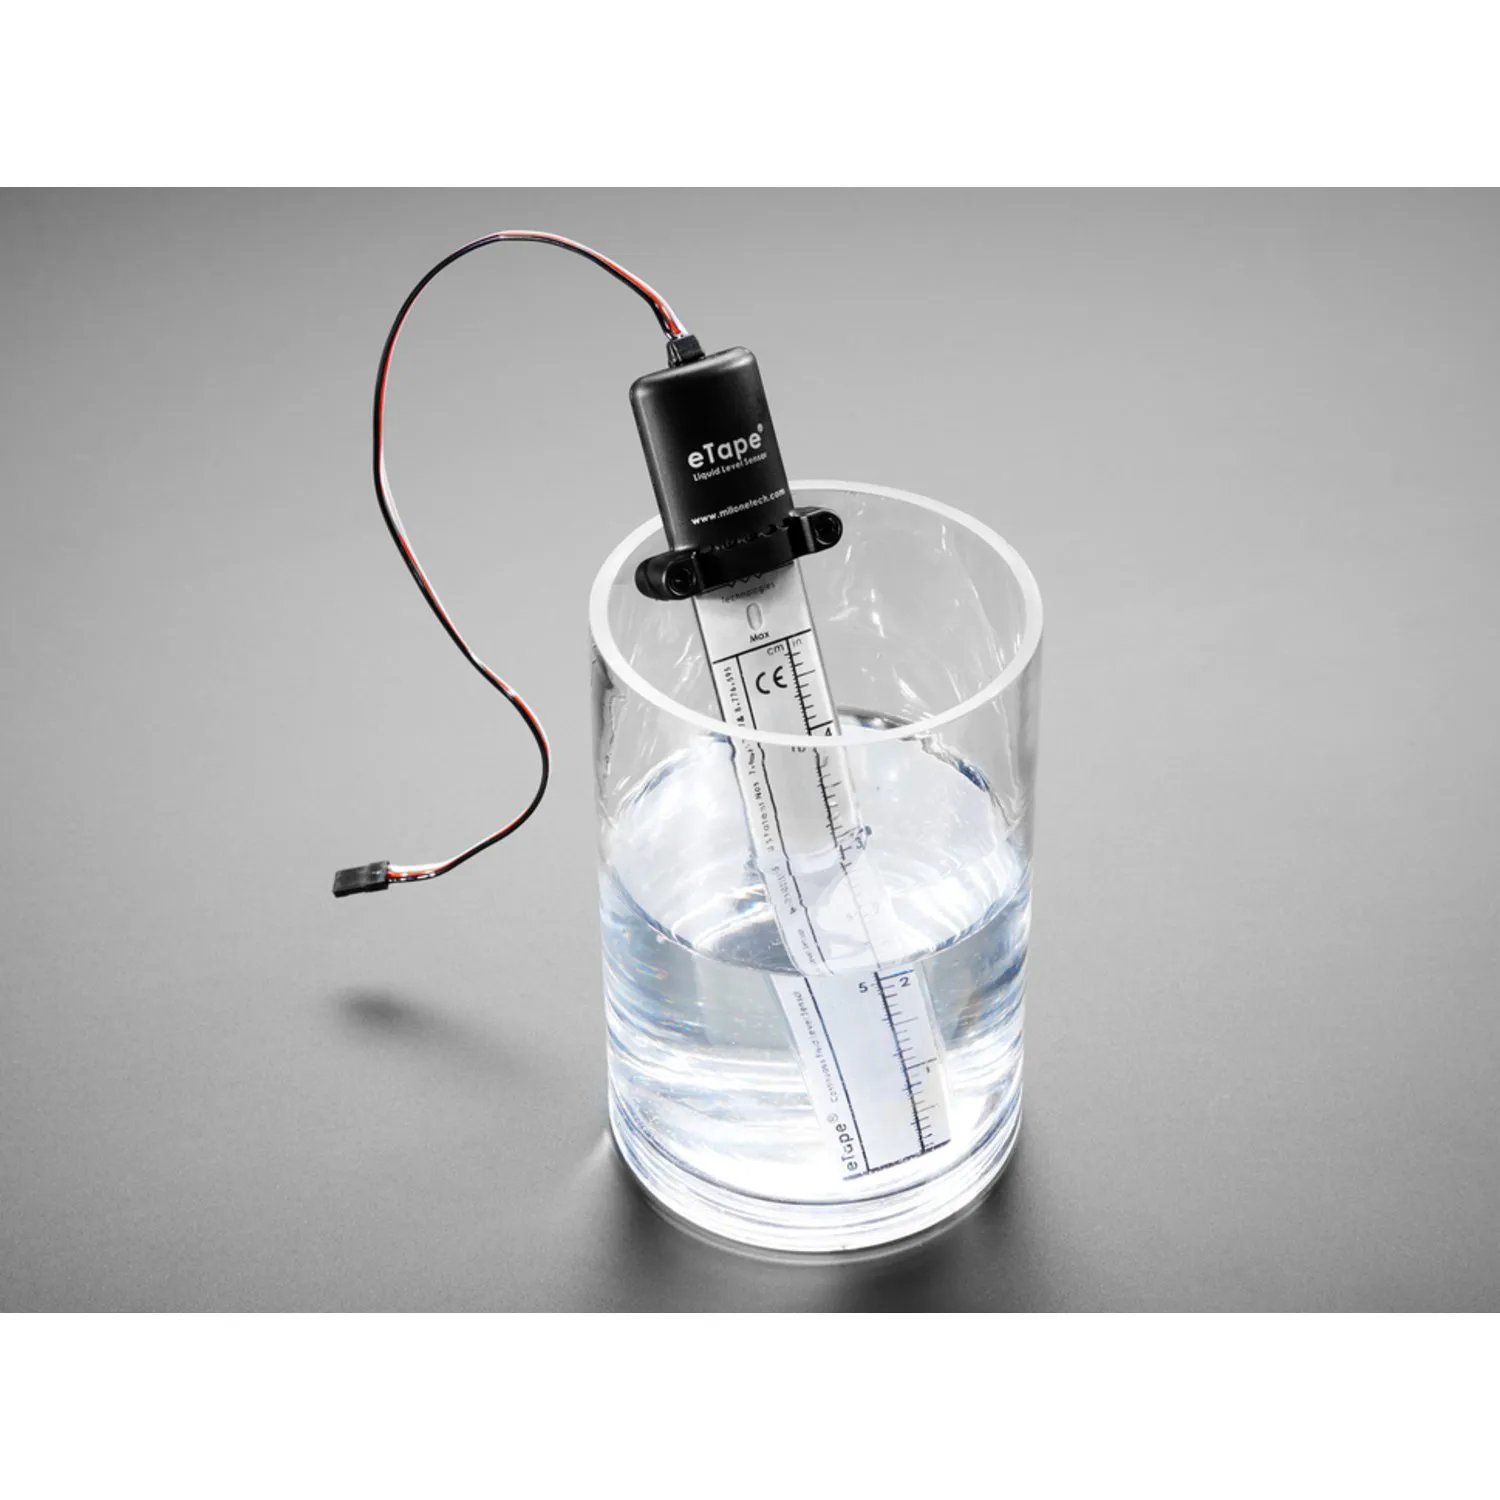 Photo of 5 eTape Liquid Level Sensor with Plastic Casing